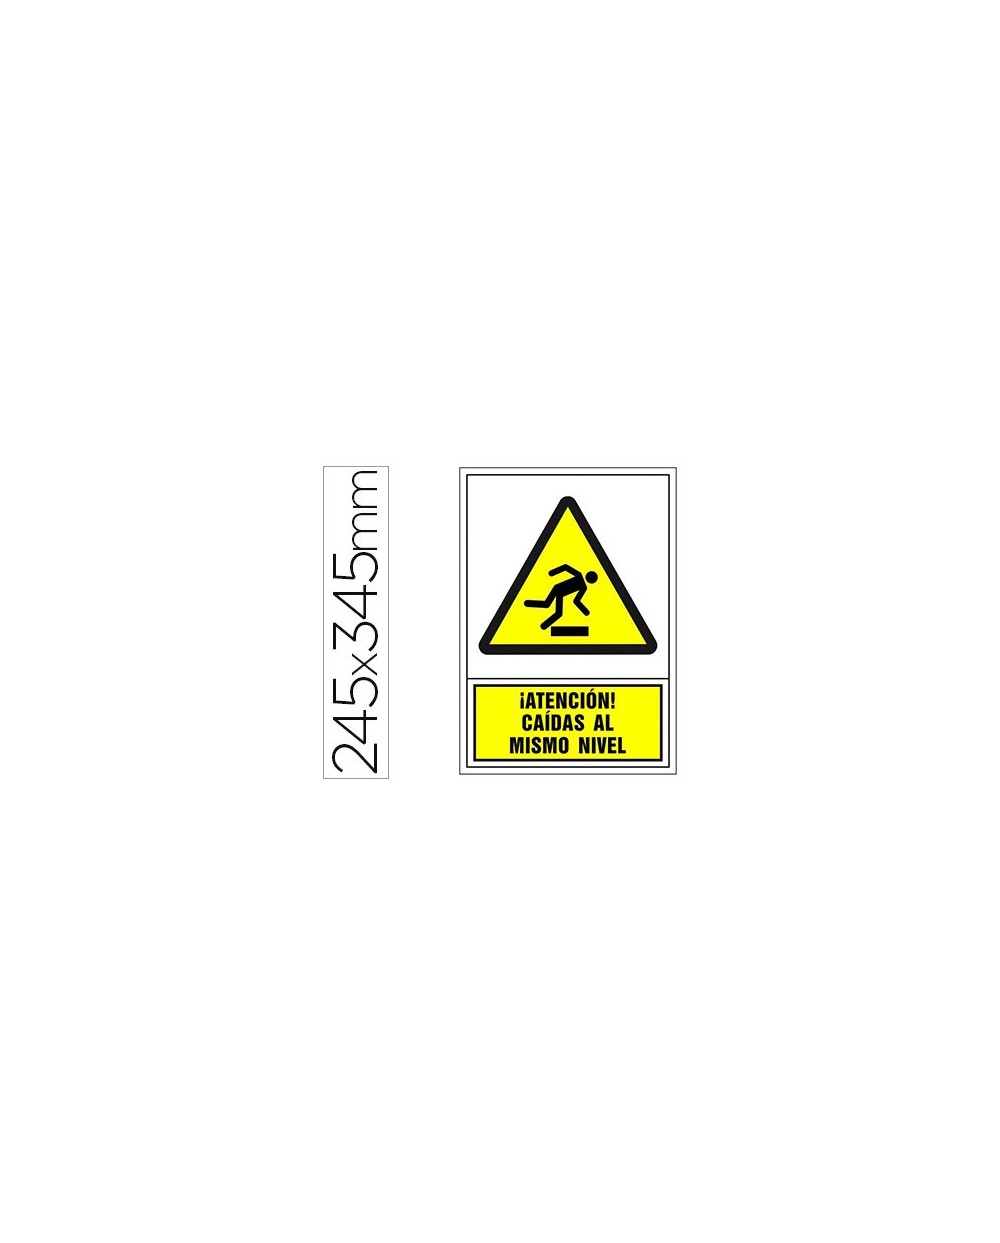 Pictograma syssa senal de advertencia atencion caidas al mismo nivel en pvc 245x345 mm